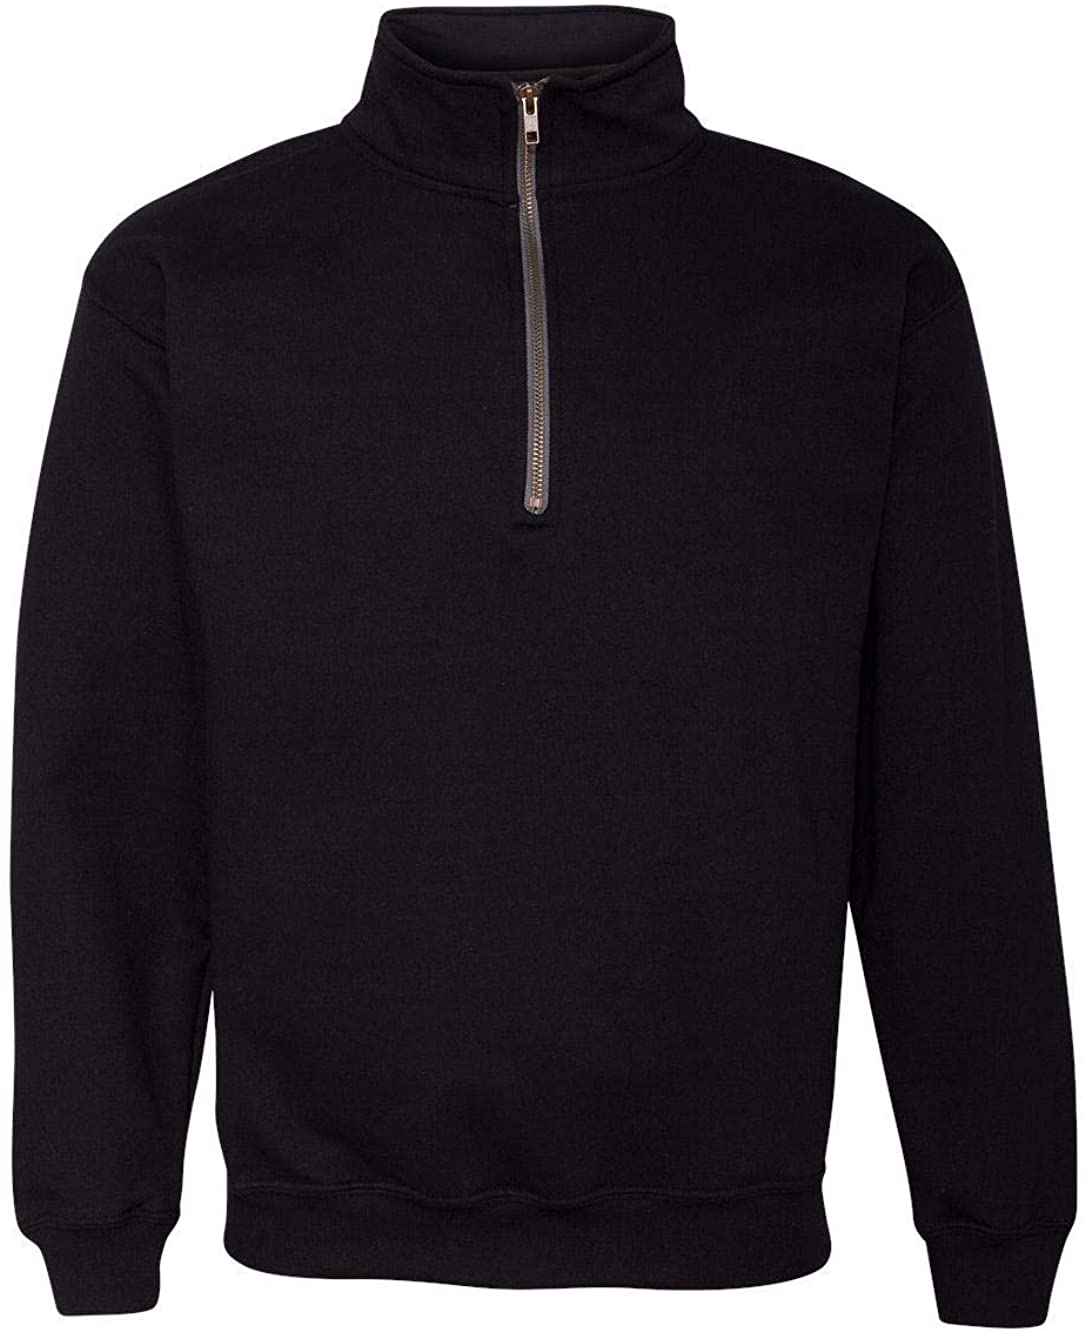 Style G18800 Gildan Mens Fleece Quarter-Zip Cadet Collar Sweatshirt 